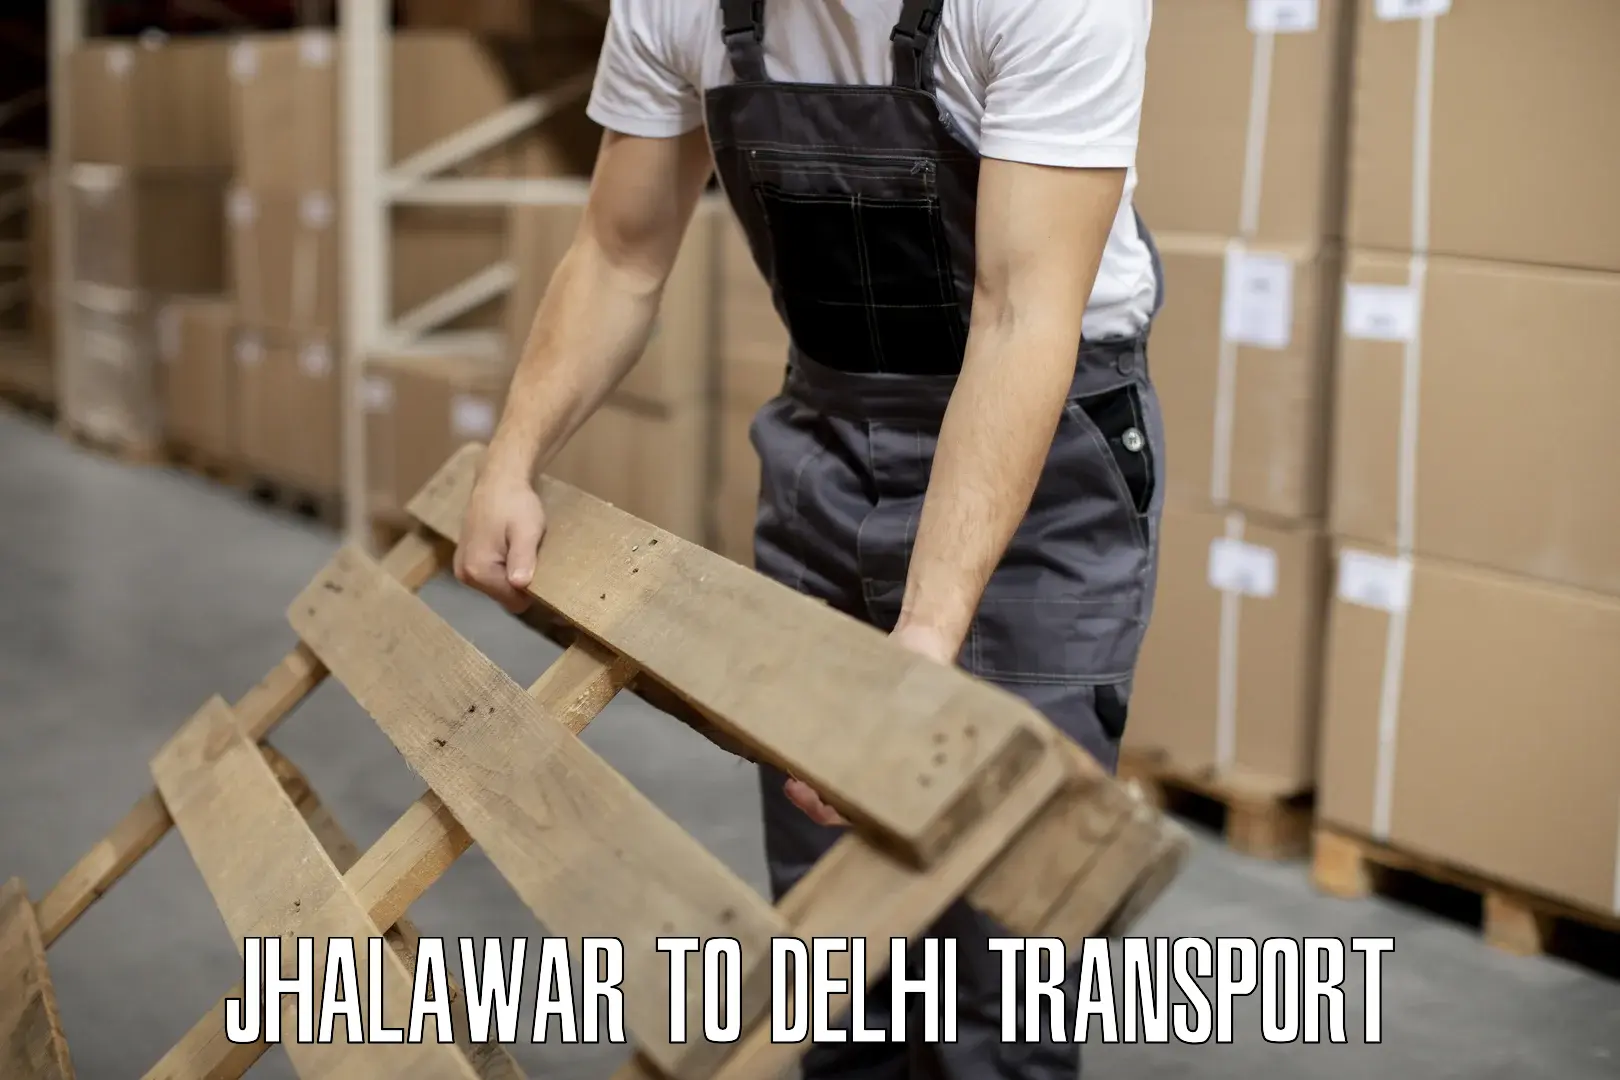 Land transport services Jhalawar to Delhi